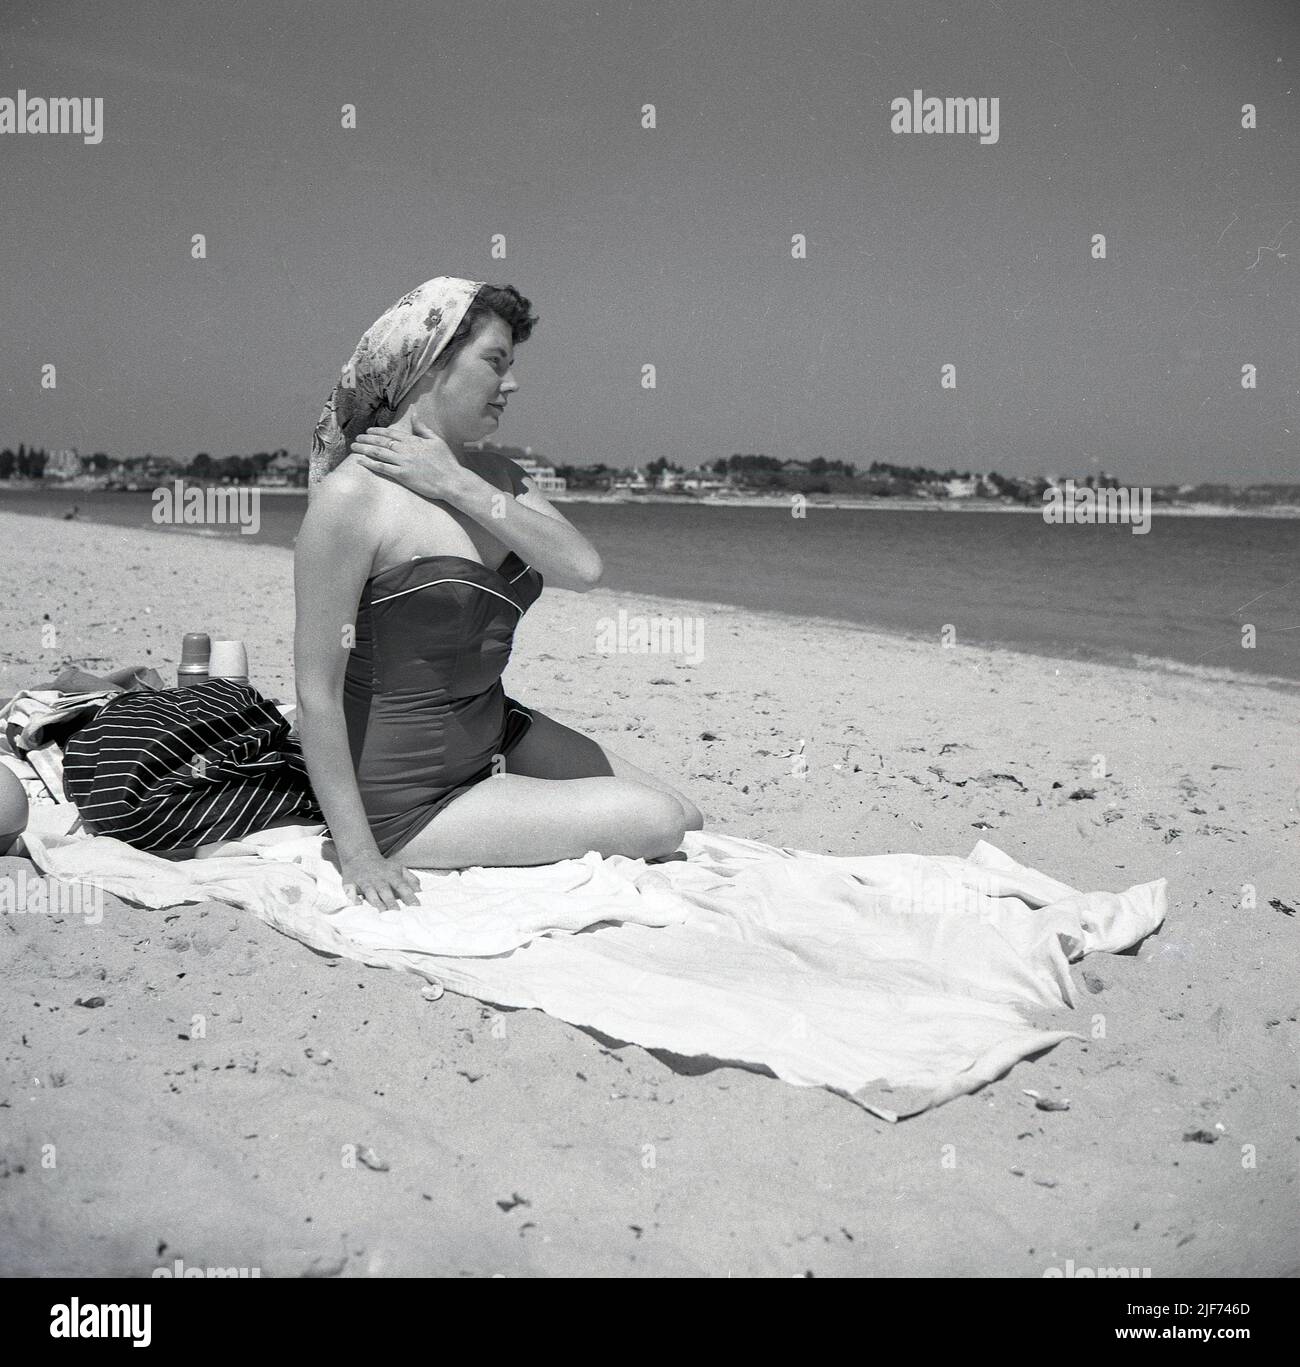 1950s, historique, une femme dans un maillot de bain de l'époque, avec un foulard, assis sur une serviette sur une plage de sable, Angleterre. ROYAUME-UNI. Banque D'Images